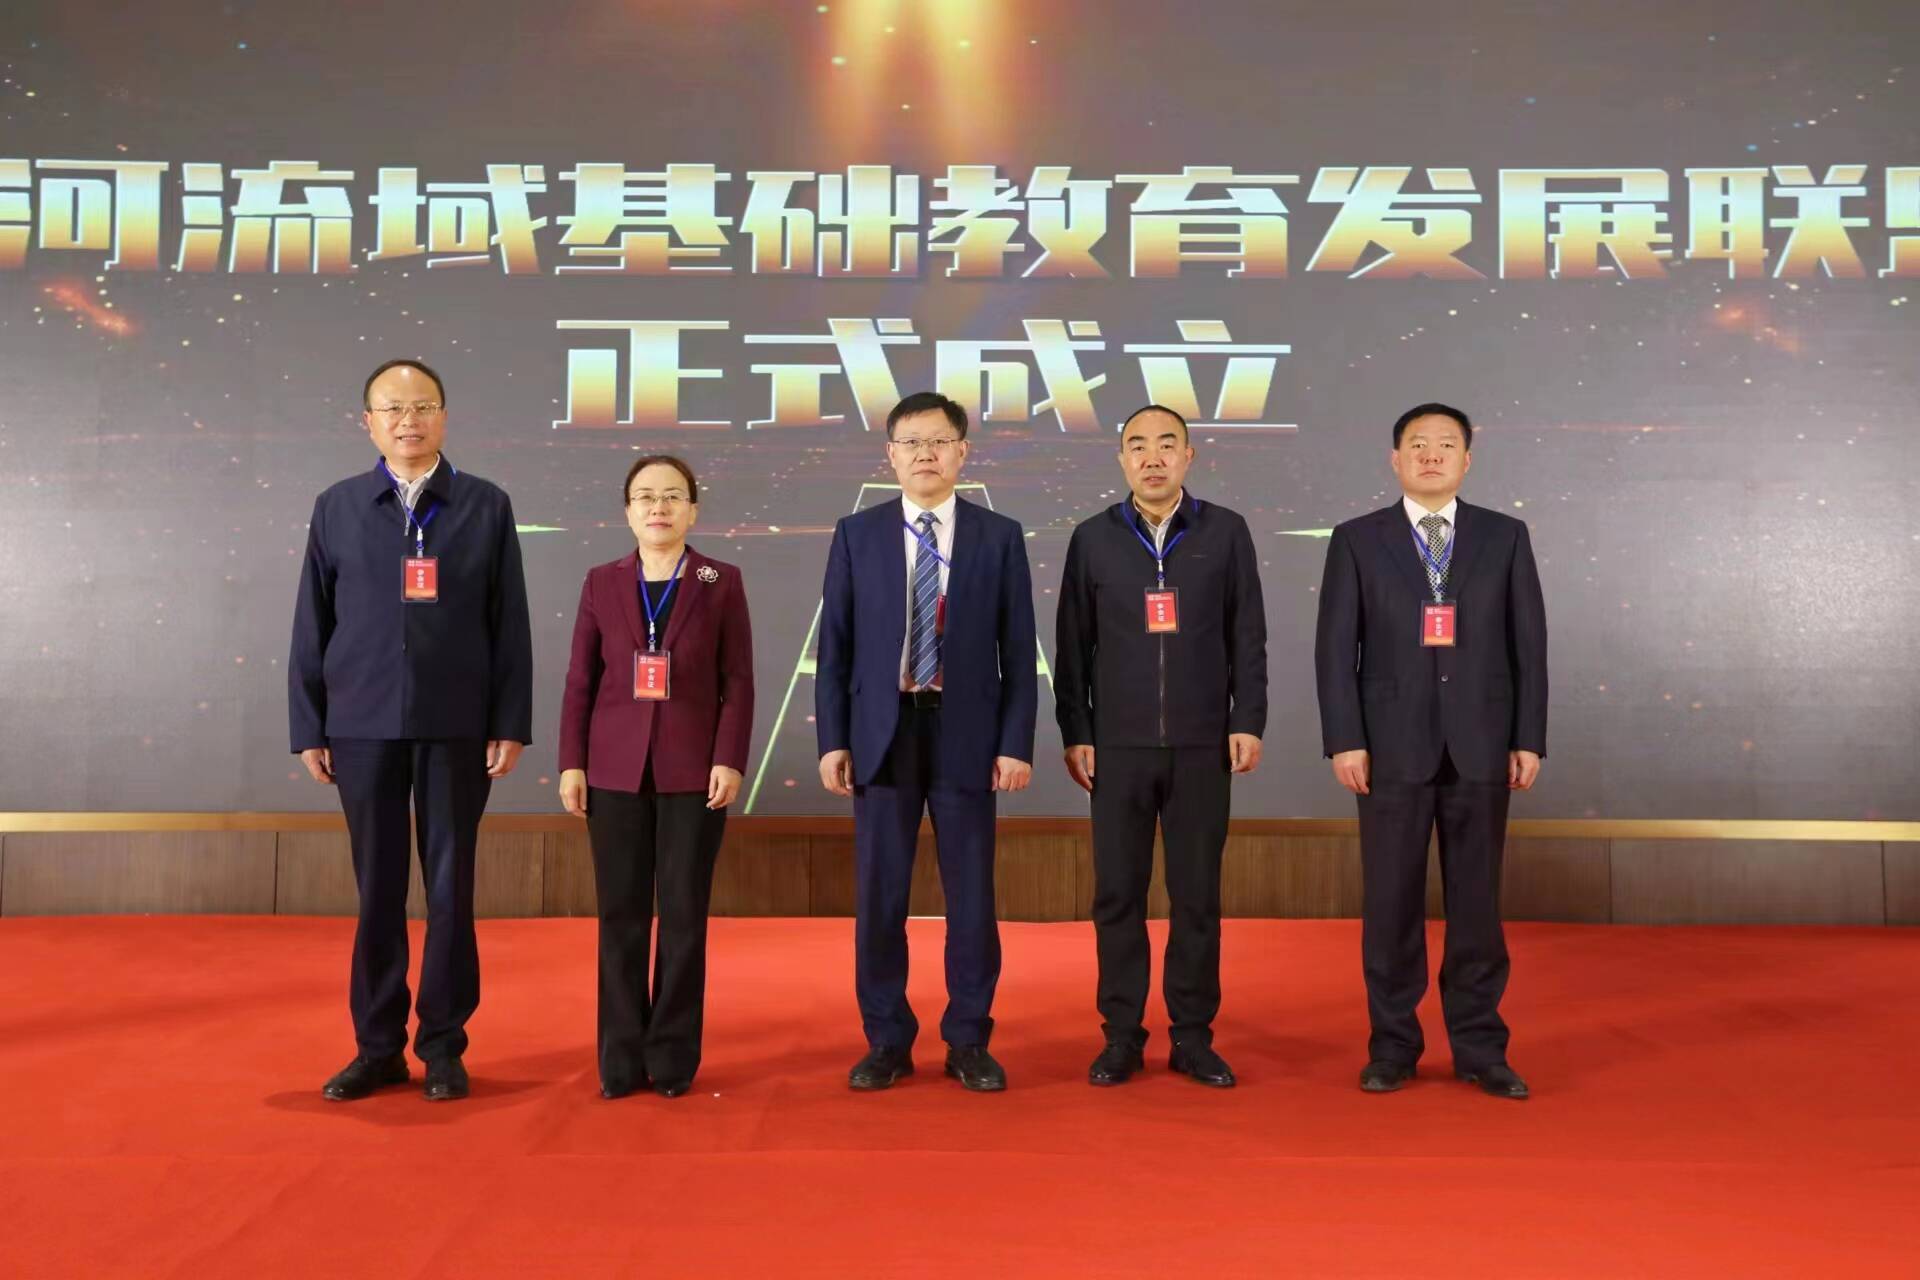 黄河流域基础教育发展联盟成立大会暨基础教育高质量发展论坛在济南举行